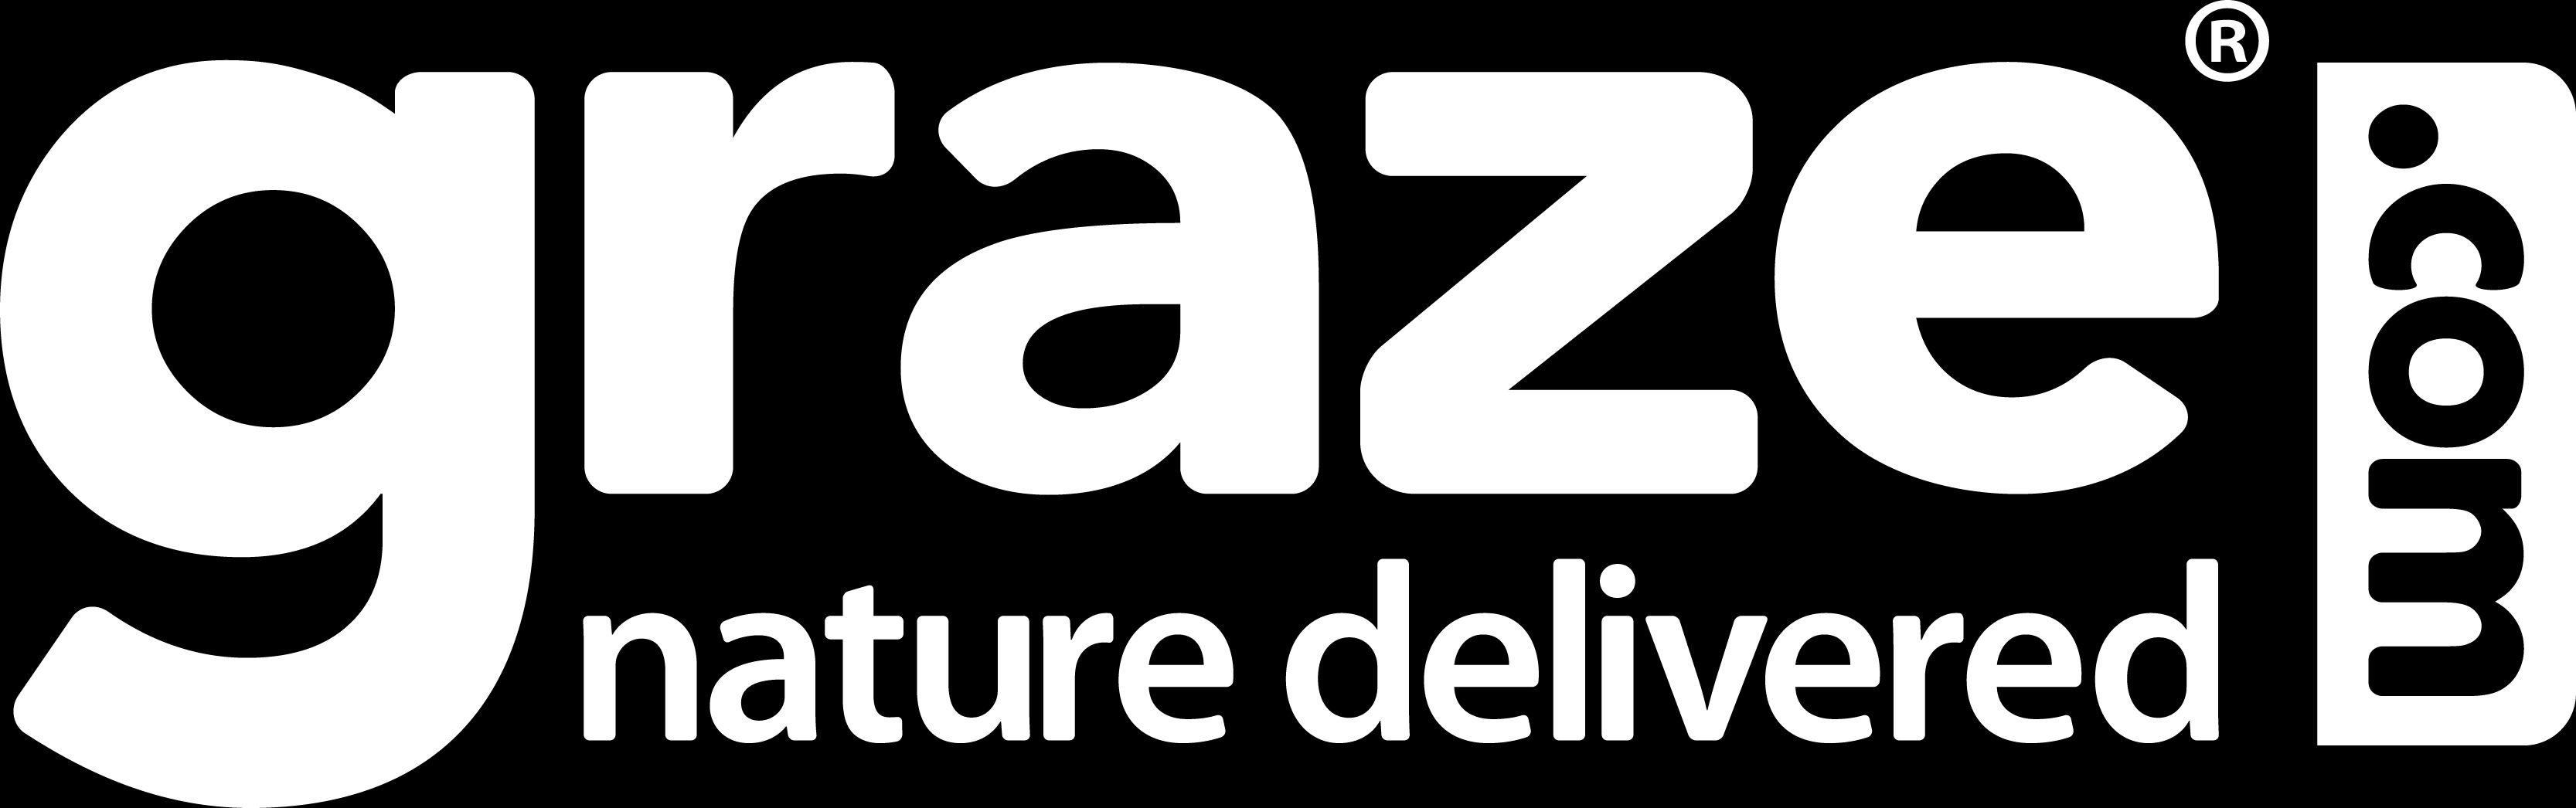 Graze.com Logo - Get a free box of healthy snacks from www.graze.com: What is graze.com?